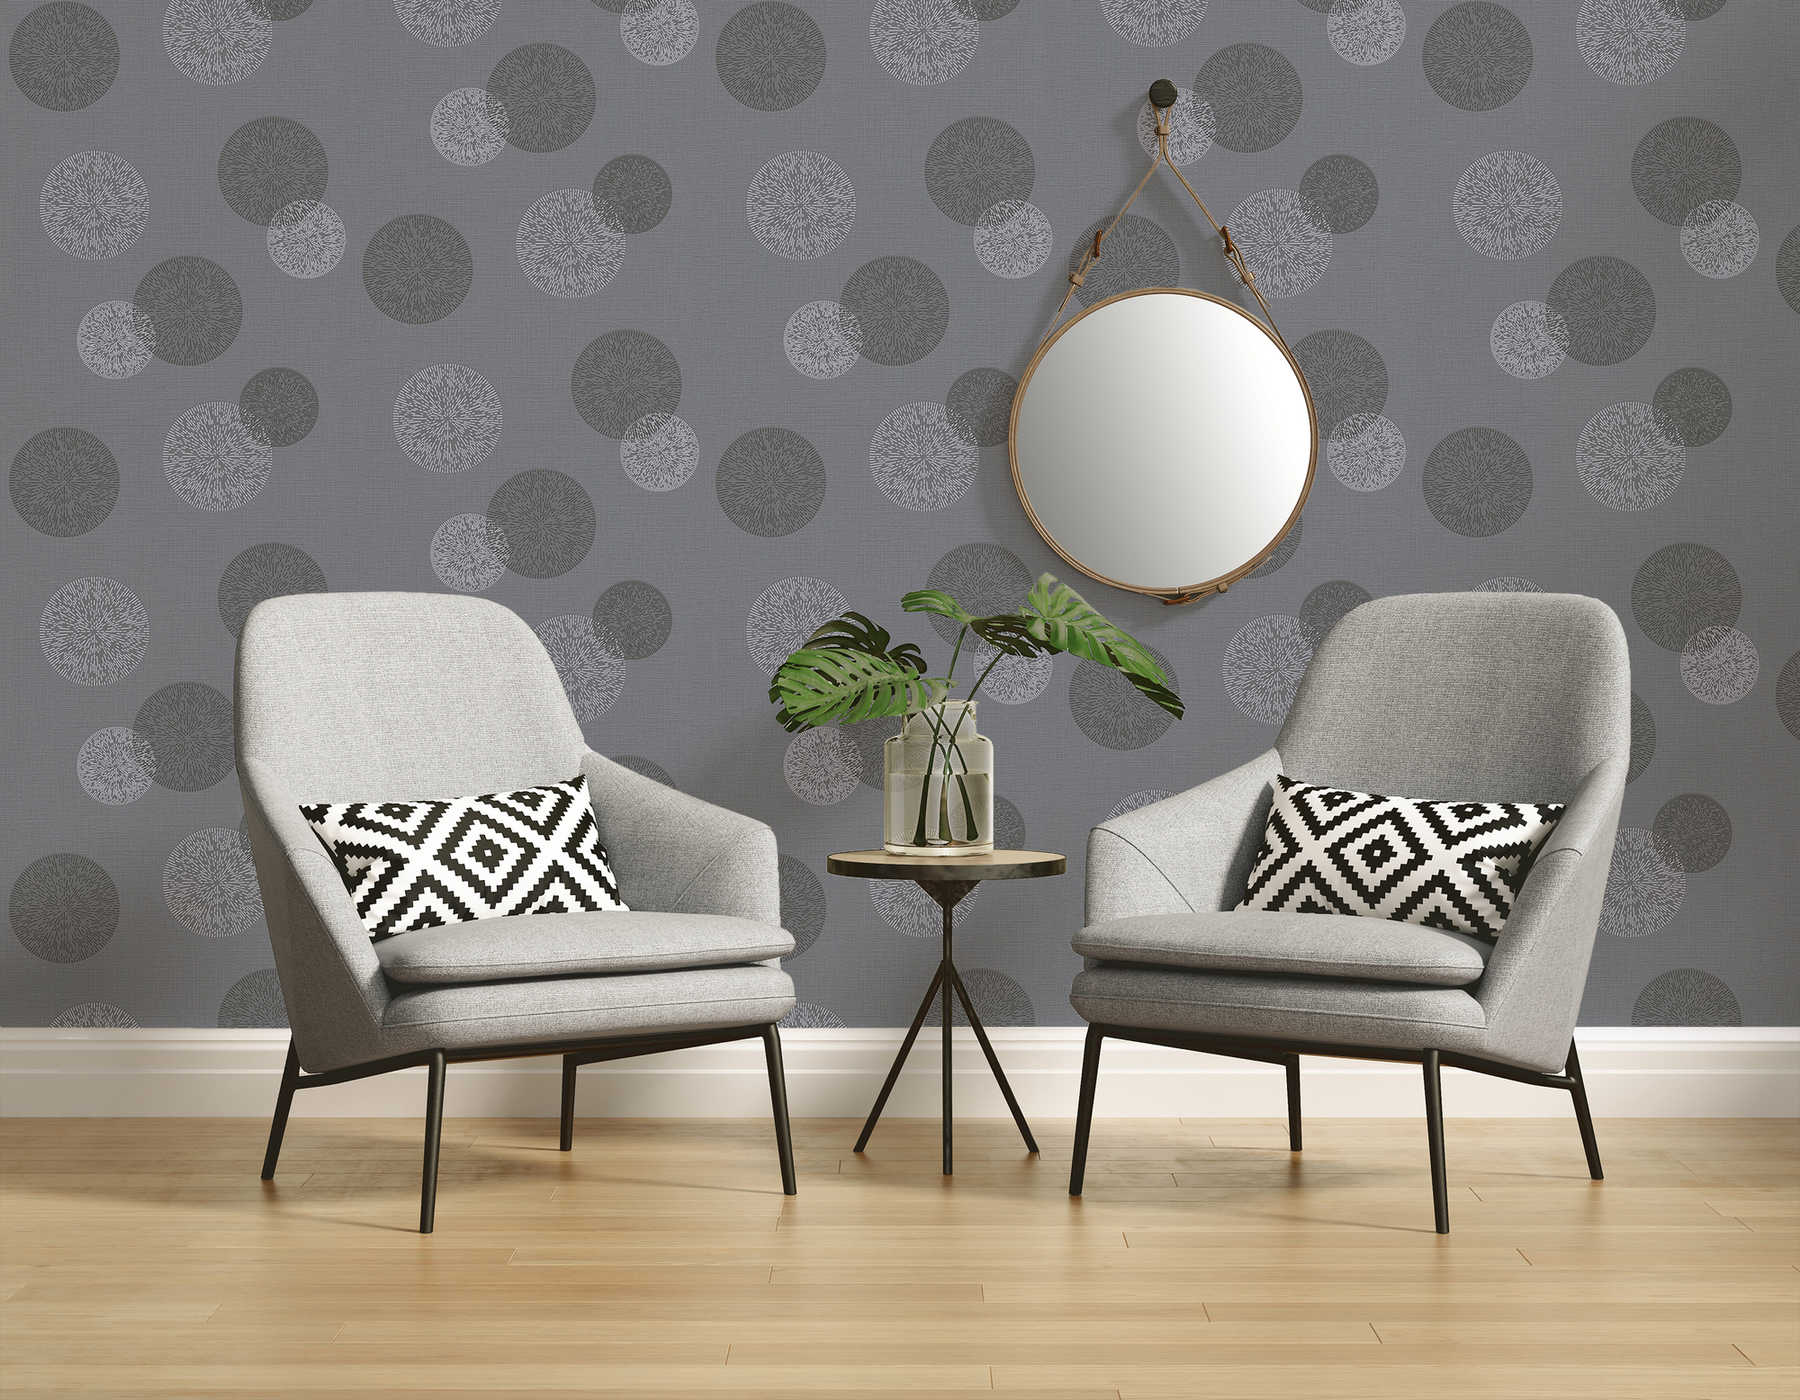             Papier peint salon avec motif circulaire moderne - gris
        